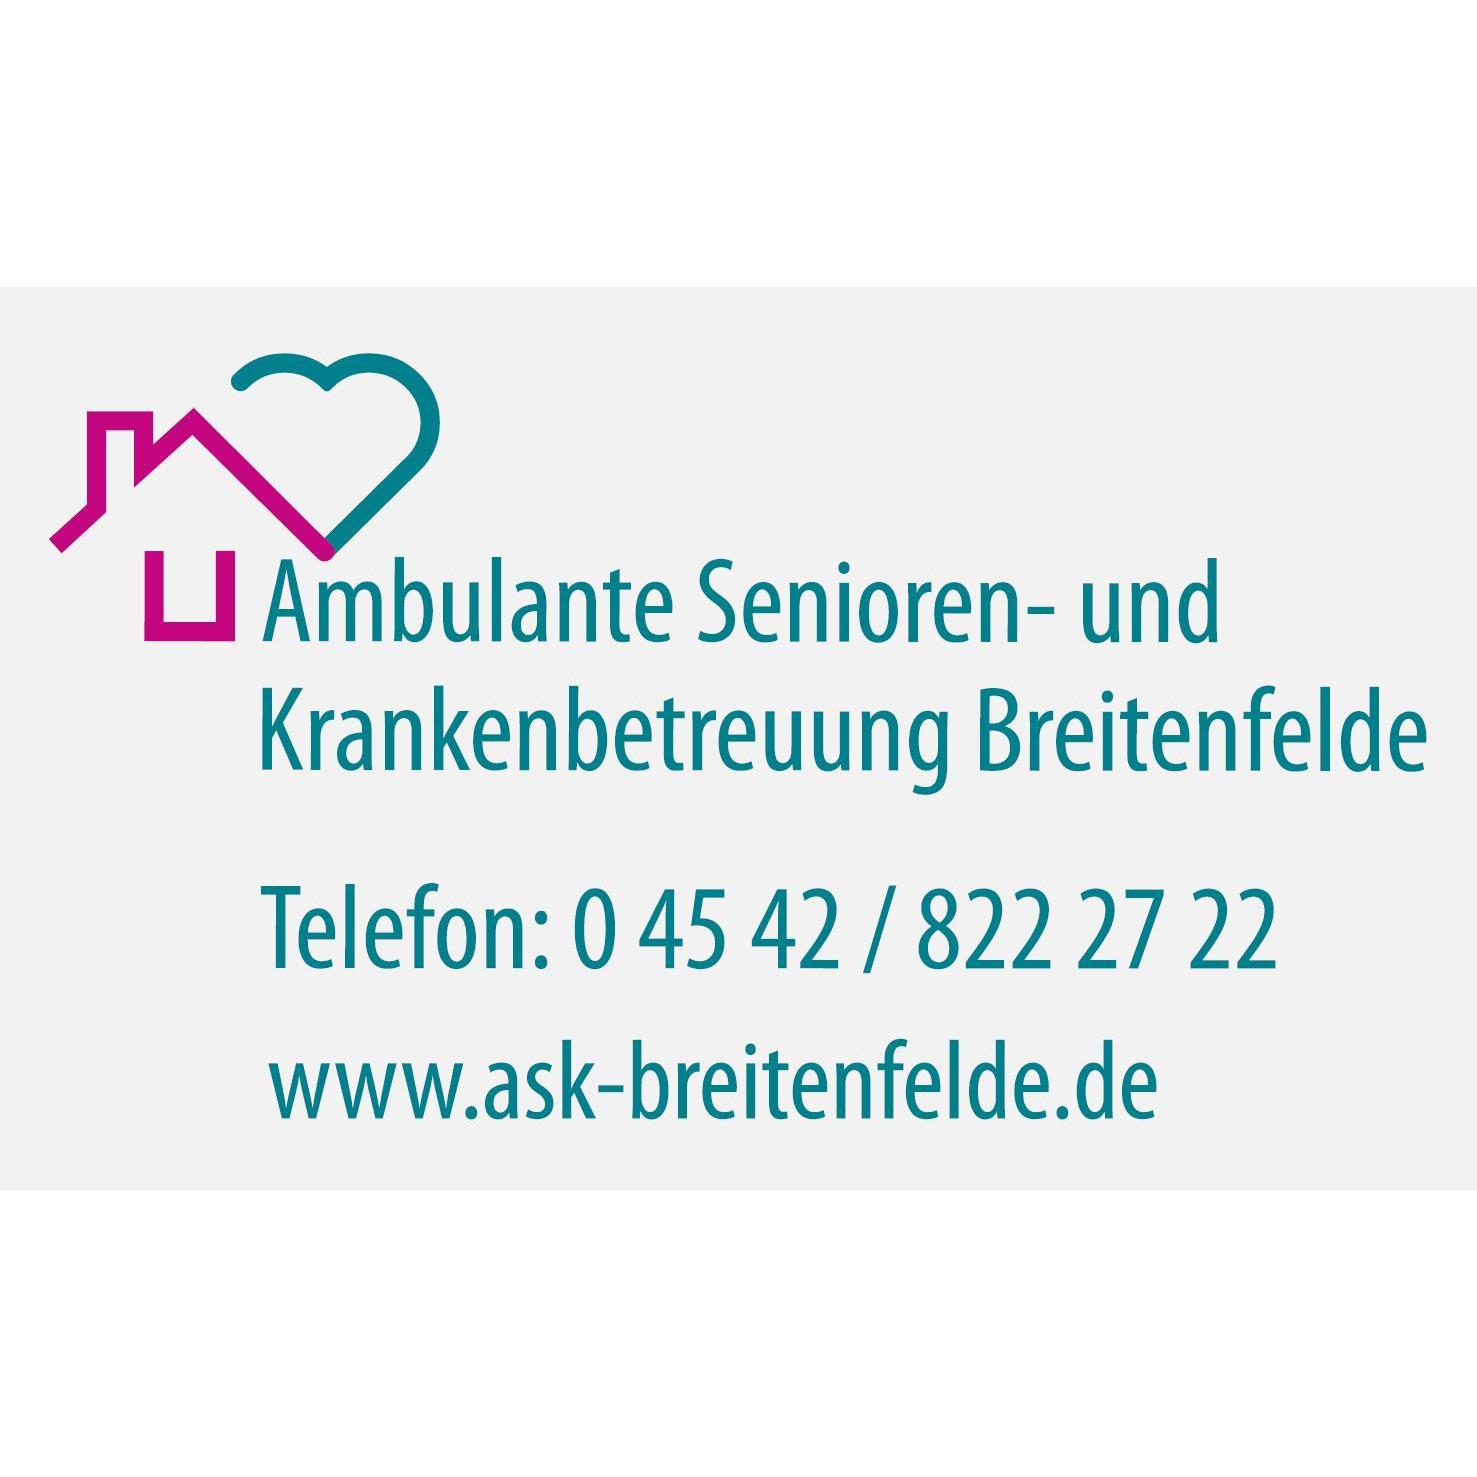 Ambulante Senioren- und Krankenbetreuung Breitenfelde Logo